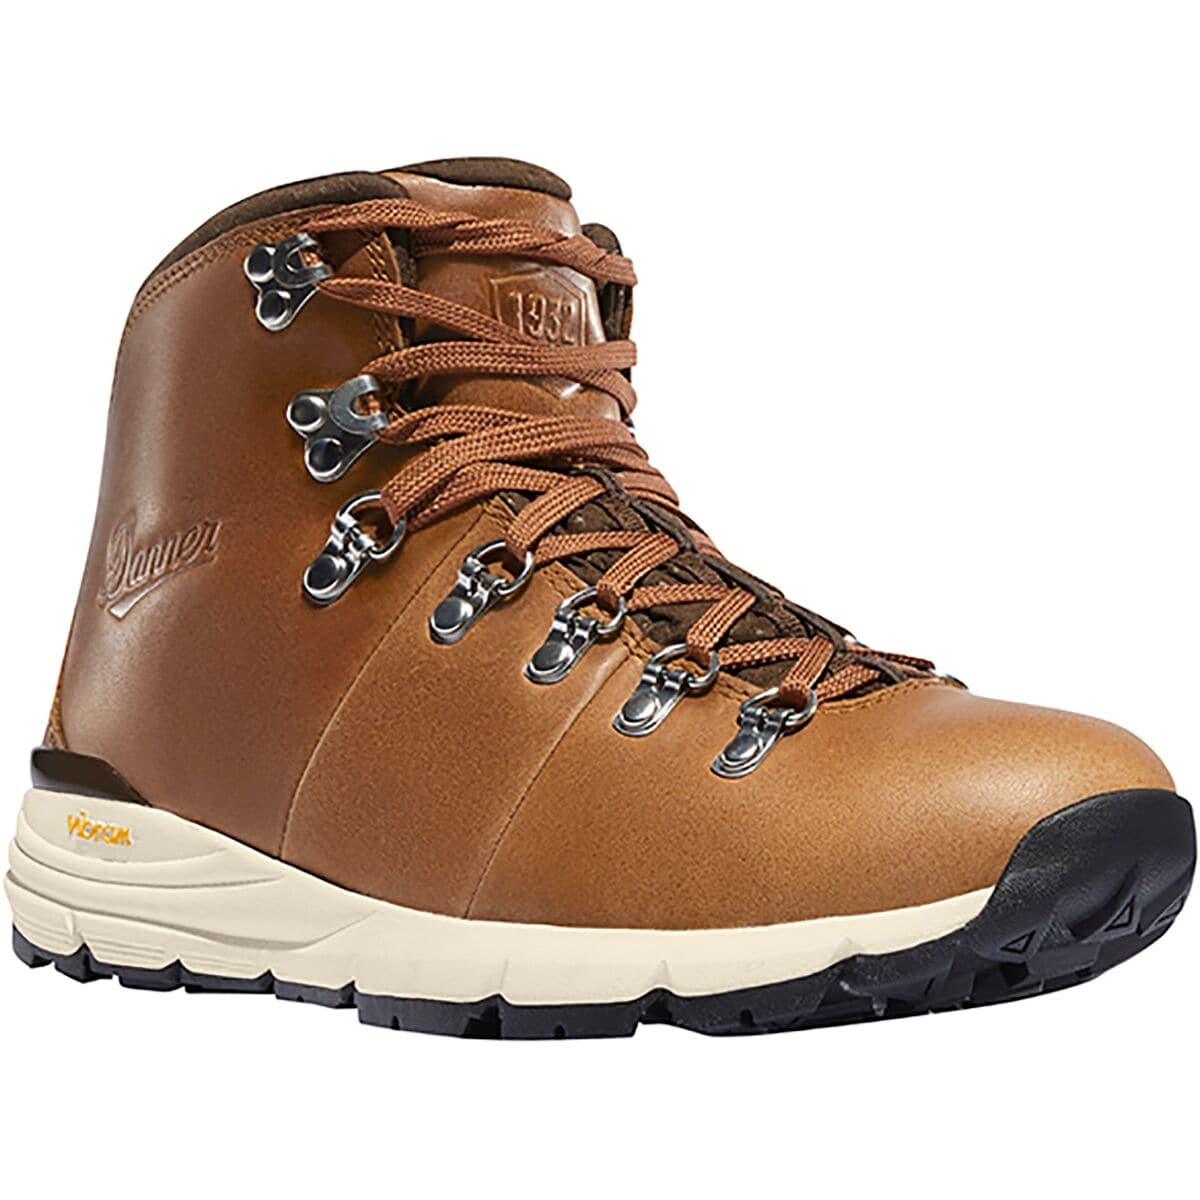 Danner Mountain 600 Full Grain Leather Hiking Boot - Women's - Footwear